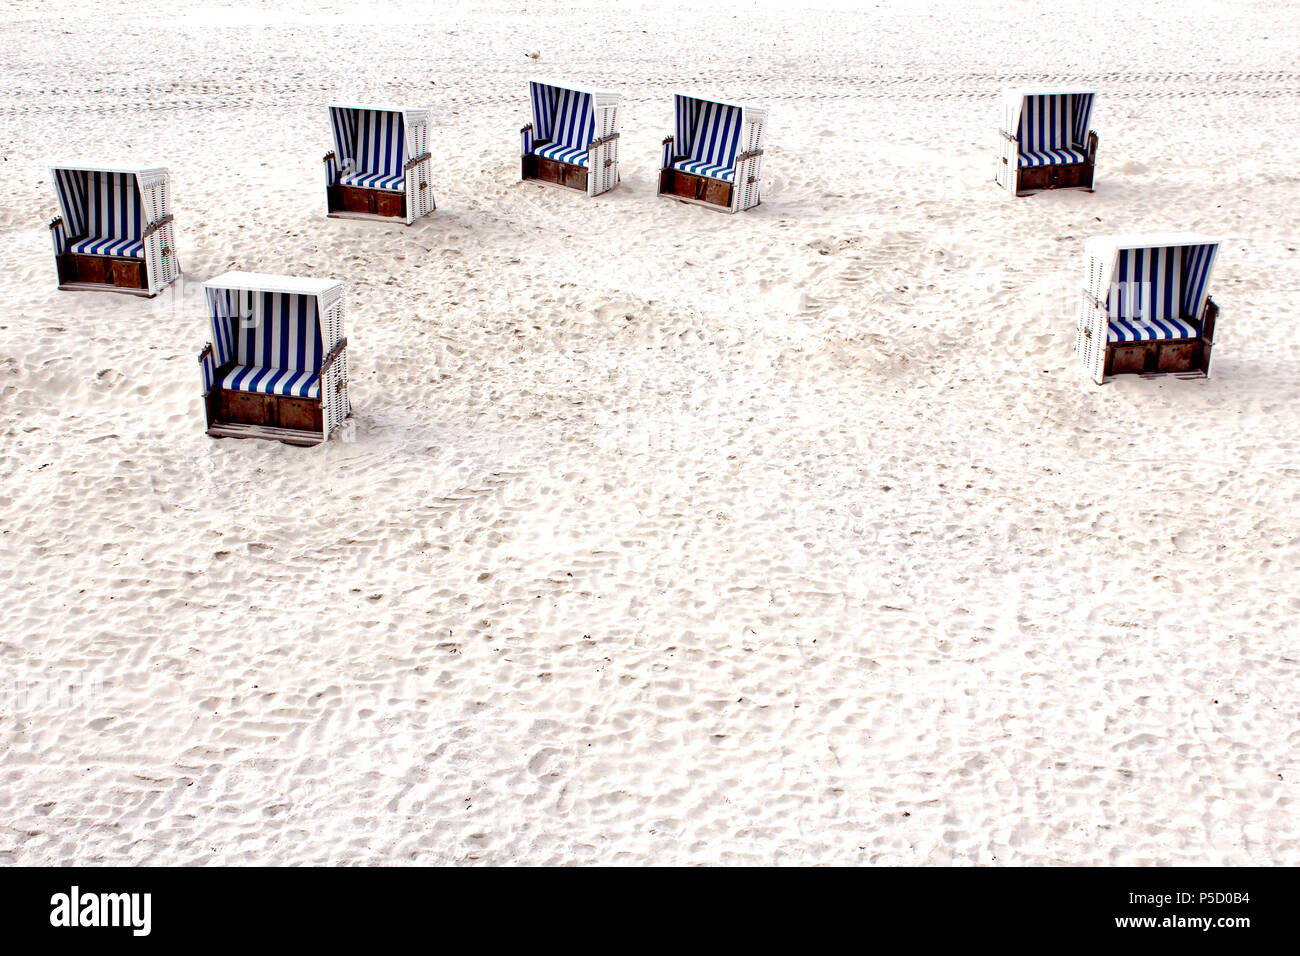 7 weiße Strandkörbe mit blau weiß gestreiften Bezügen, Polstern am weißen Strand von List, Sylt, Deutschland. Stock Photo